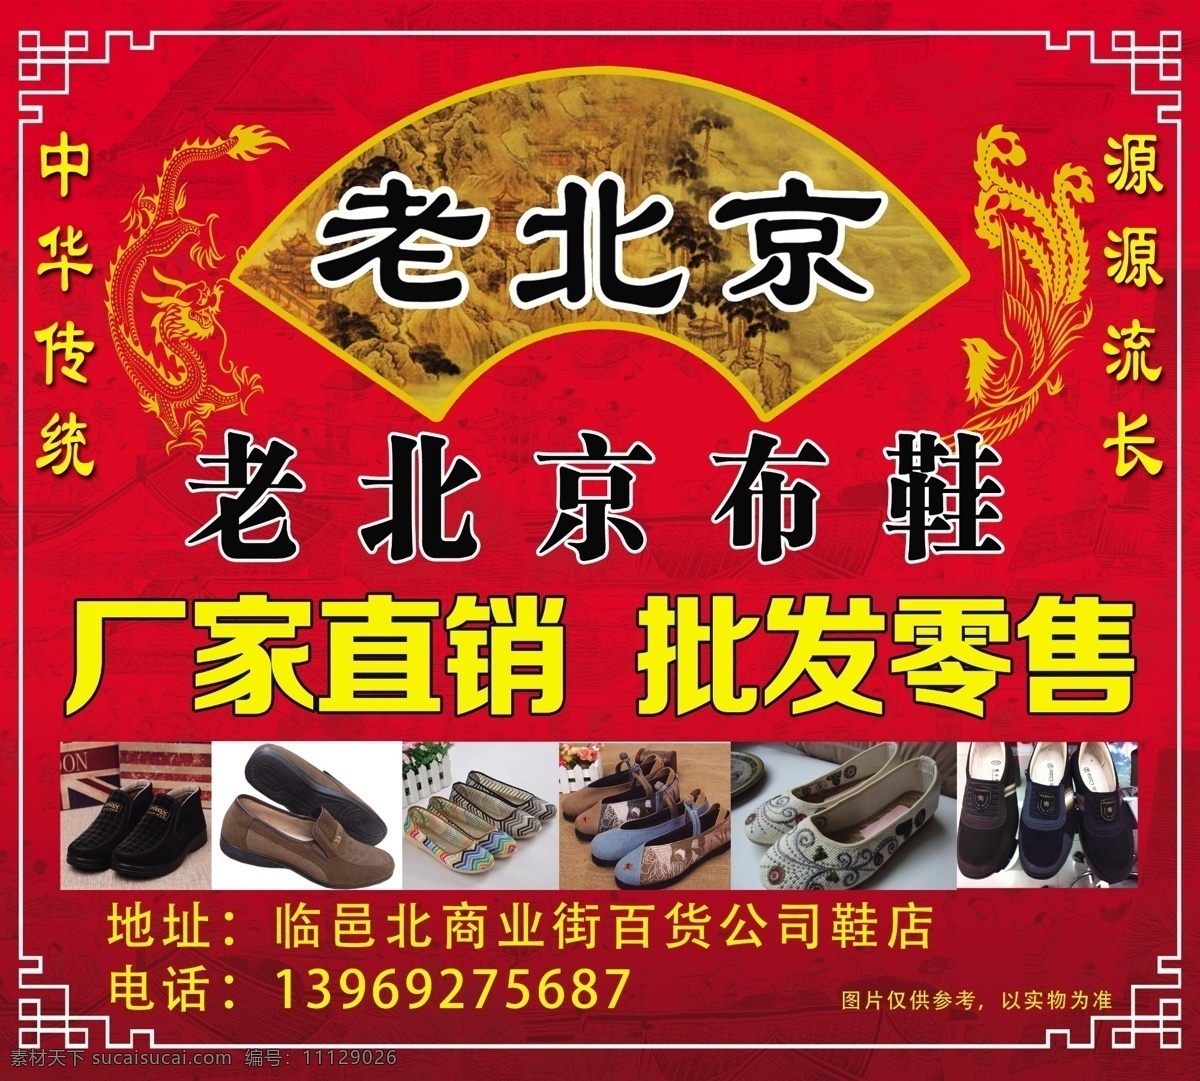 老北京布鞋 各种鞋图片 清明上河图 龙凤图案 红色背景 中华传统 源源流长 psd分层 源文件 分层